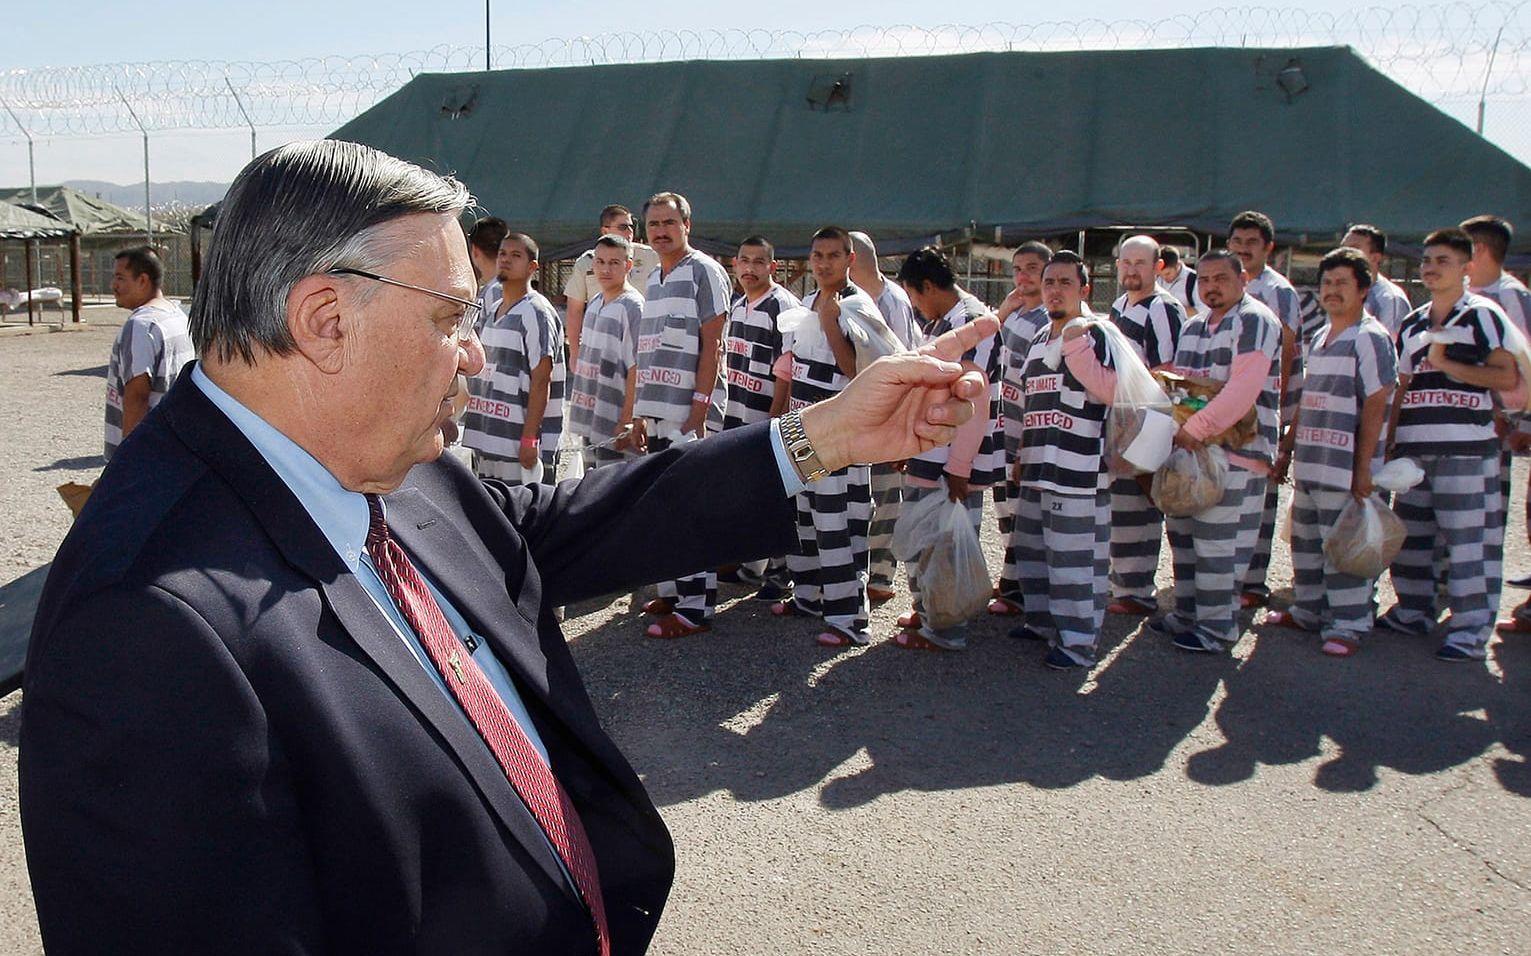 Sheriff Joe Arpaio med cirka 200 illigala invandrare som fängslats ihop med handfängsel 2009. FOTO: Ross D. Franklin/AP
